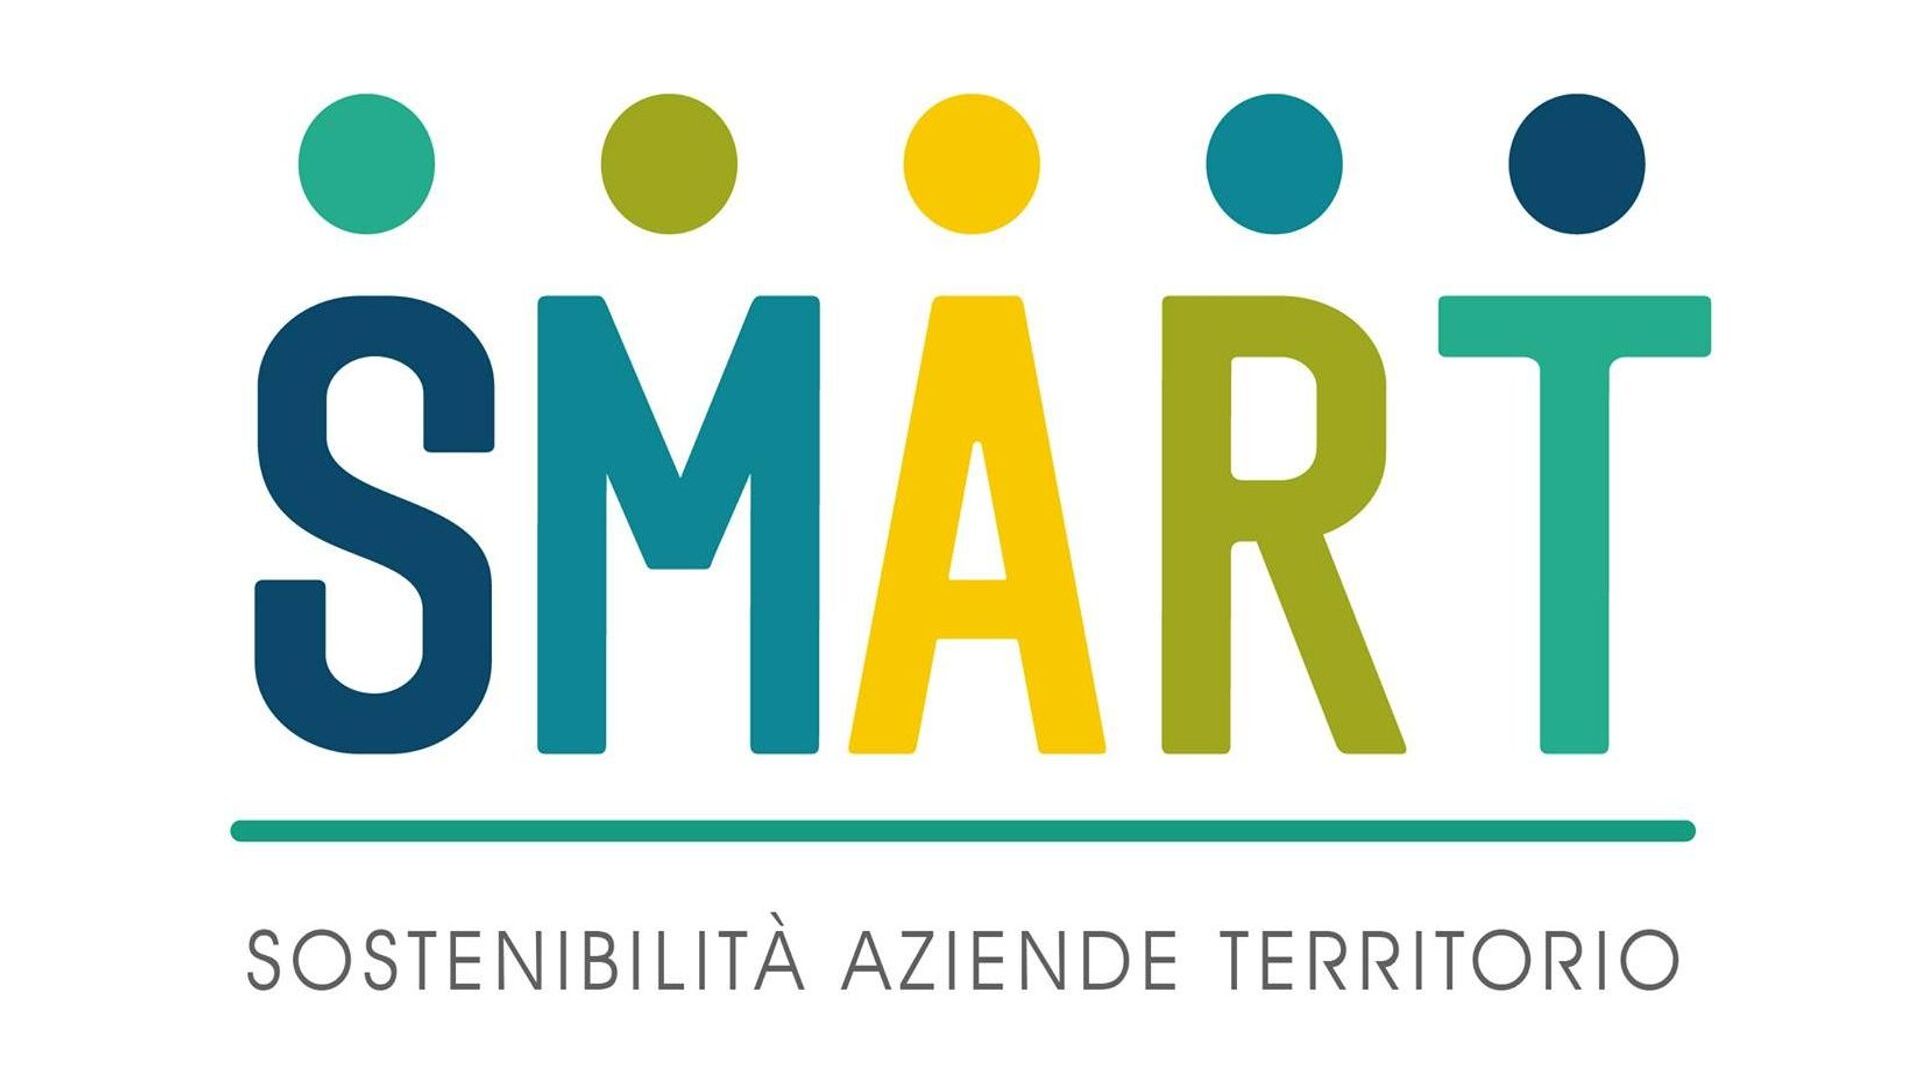 स्मार्ट परियोजना का लोगो (सीमा पार क्षेत्र में सतत रणनीतियाँ और जिम्मेदार व्यवसाय मॉडल)